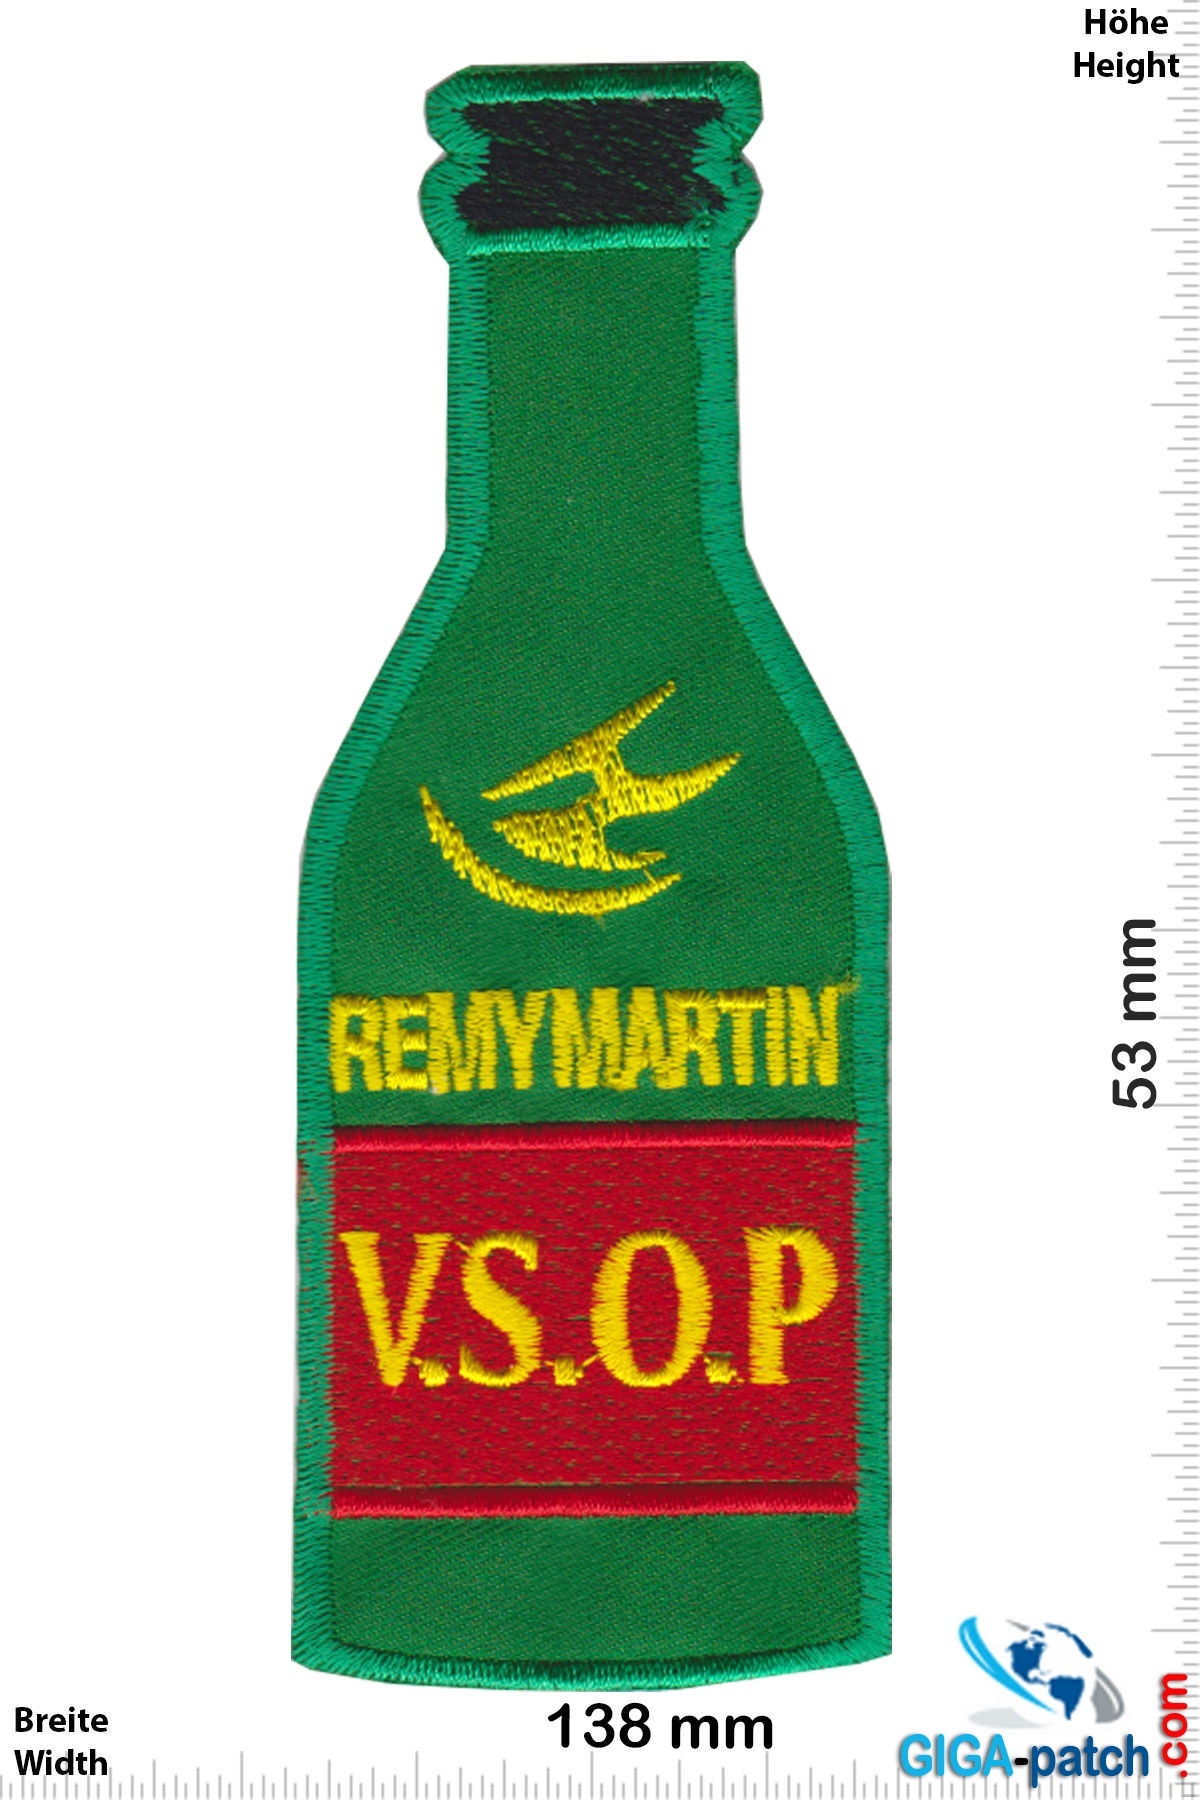 Rémy Martin - V.S.O.P